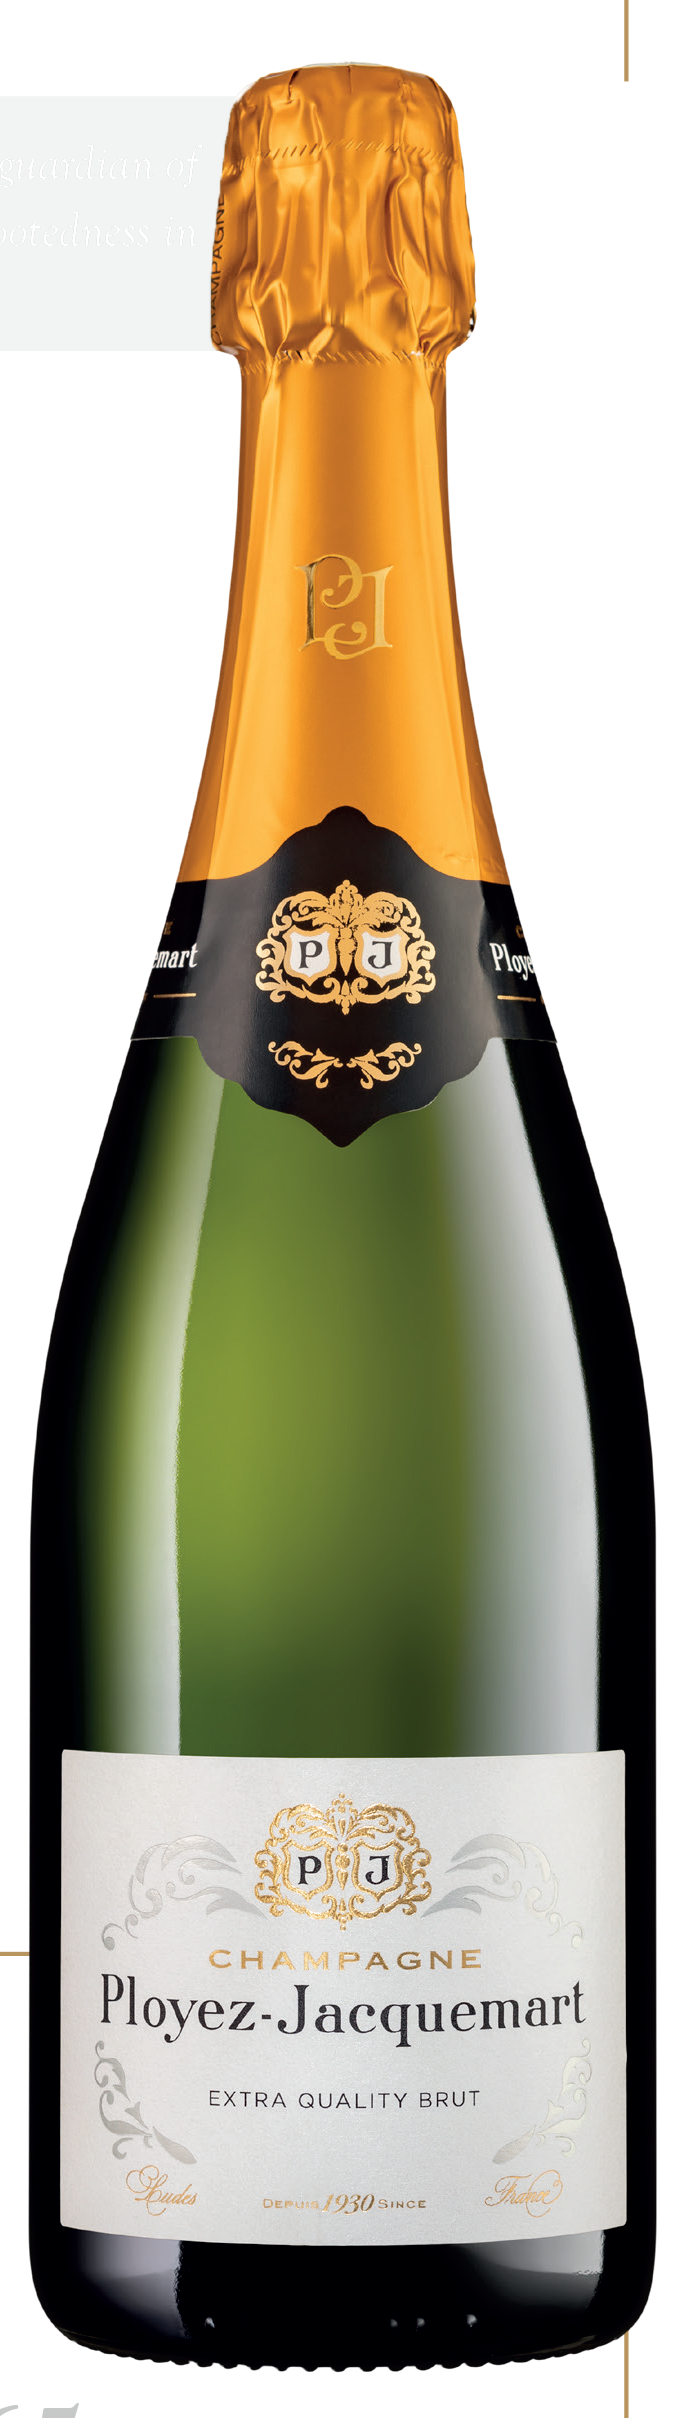 Ployez-Jacquemart NV Extra Quality Brut Champagne